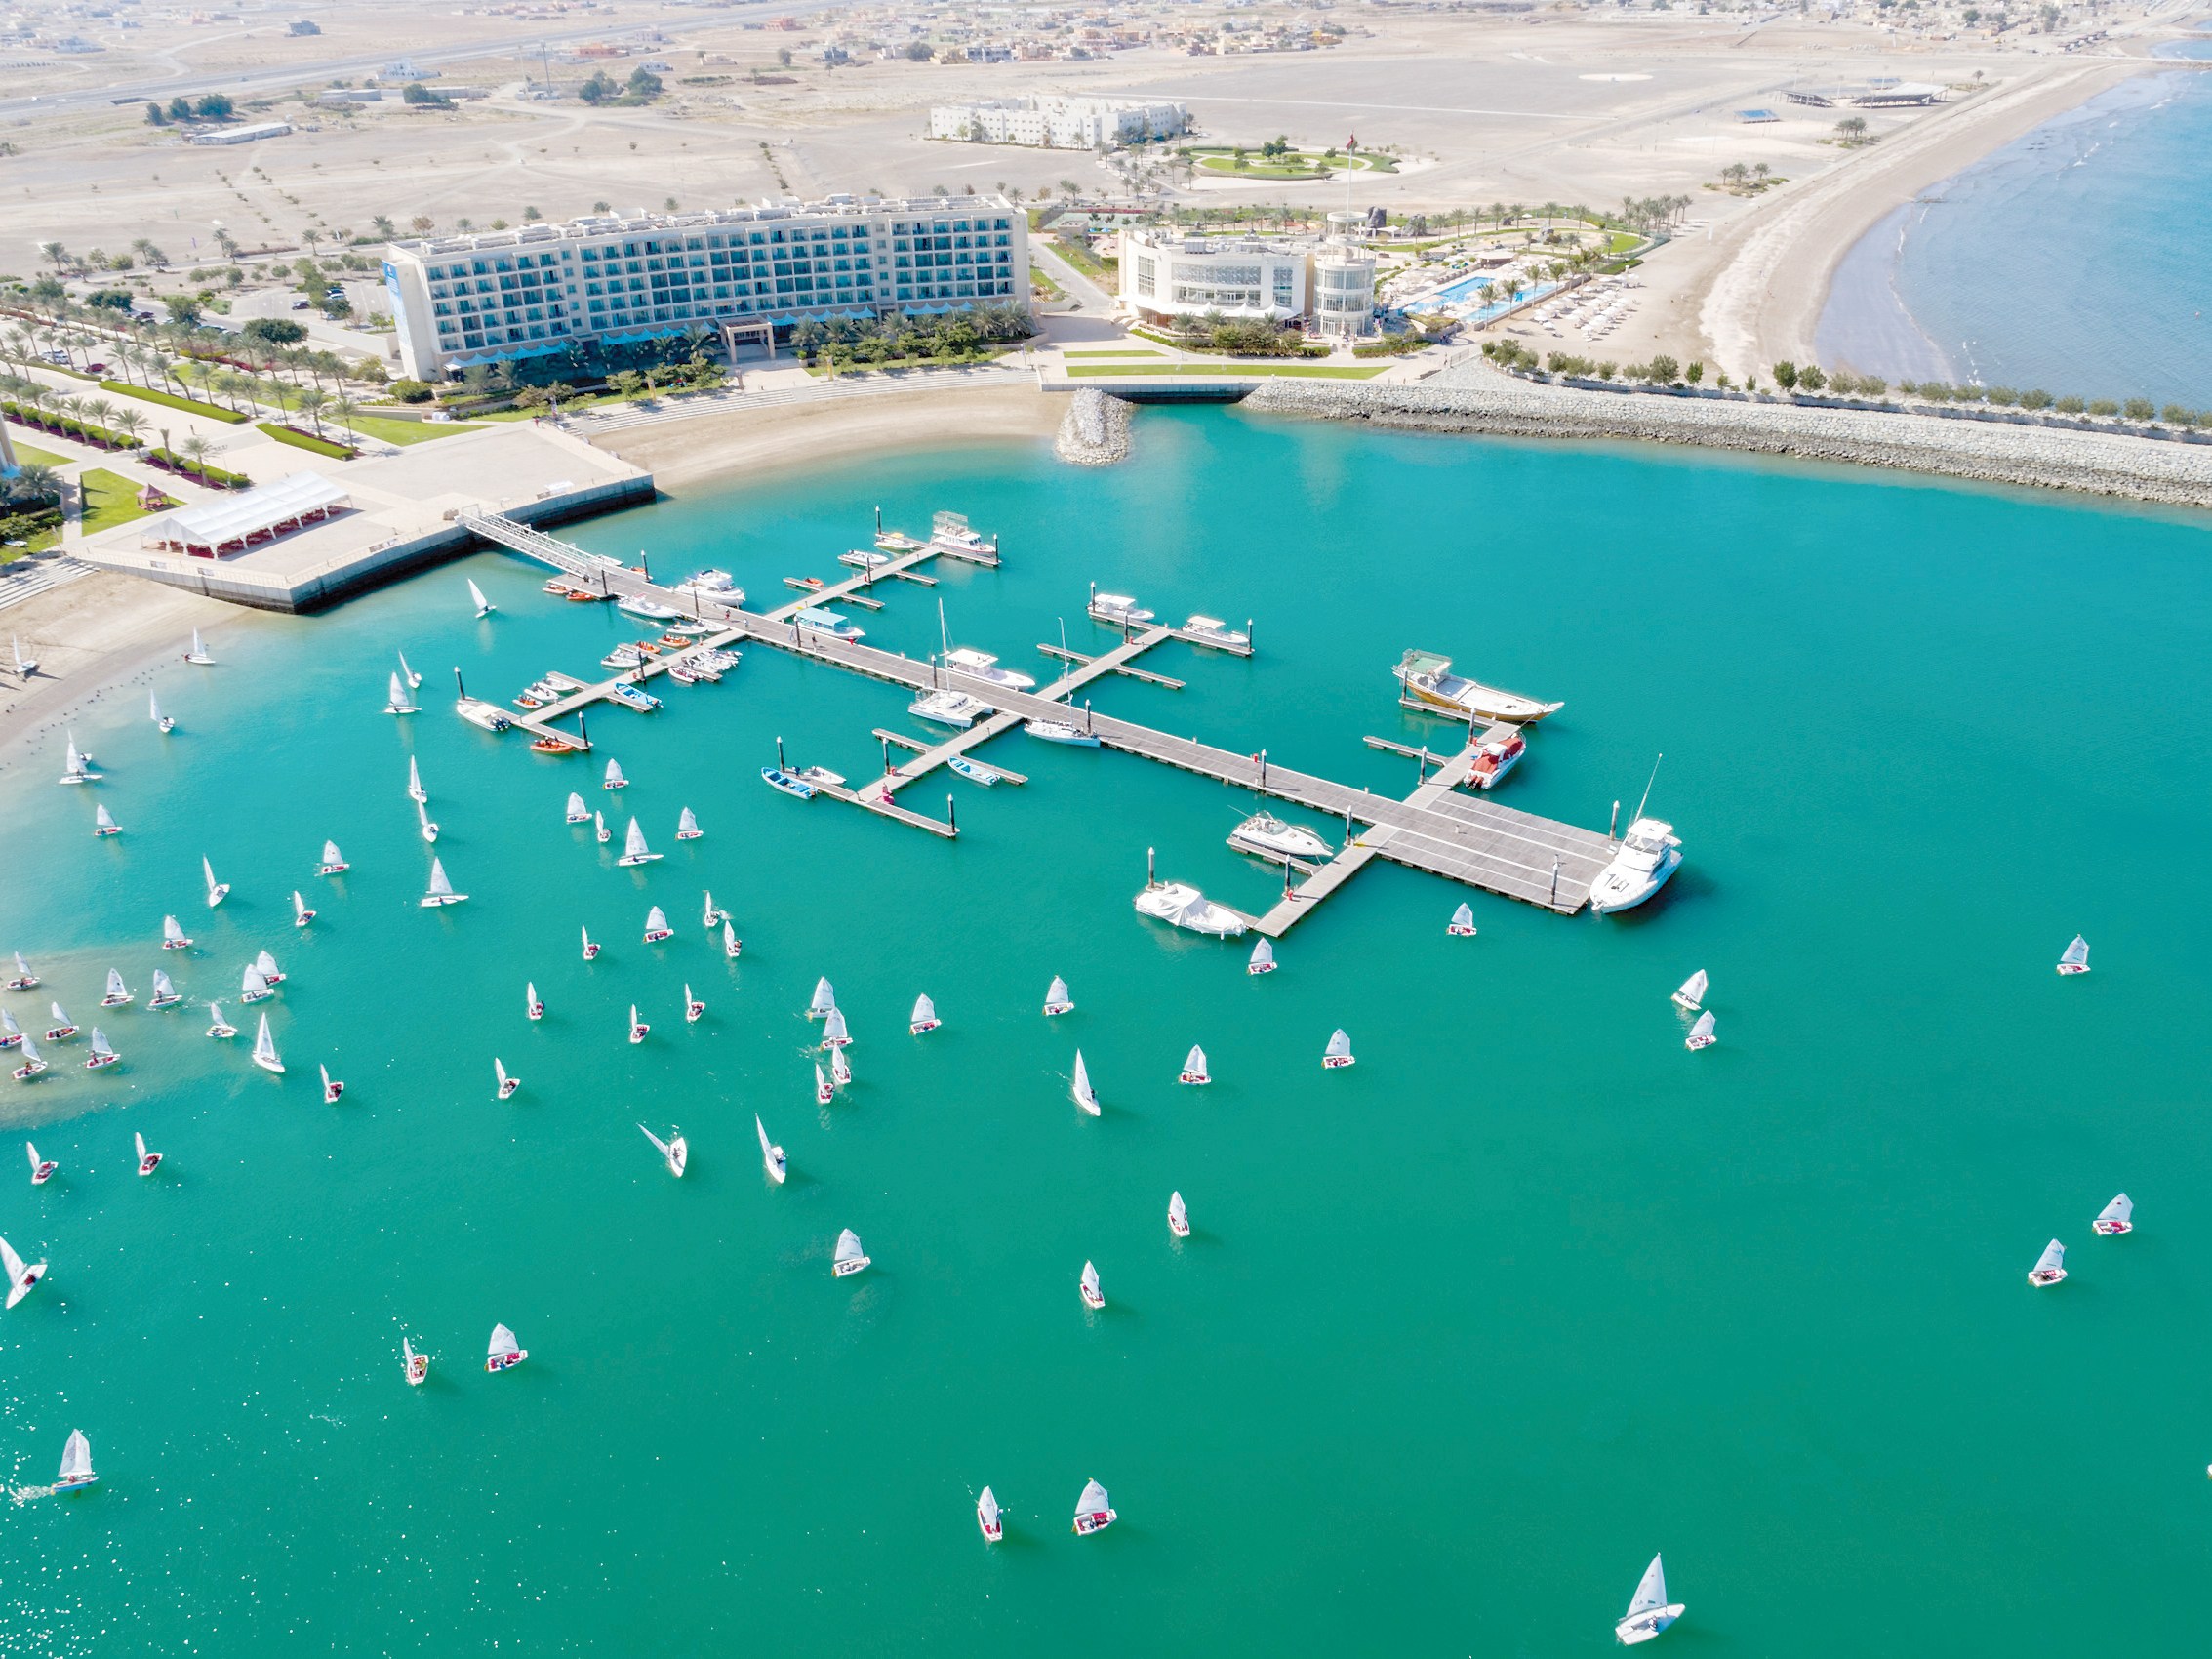 Oman Sail to host 2021 nacra17, nacra17FX, and Nacra 17 World Championships